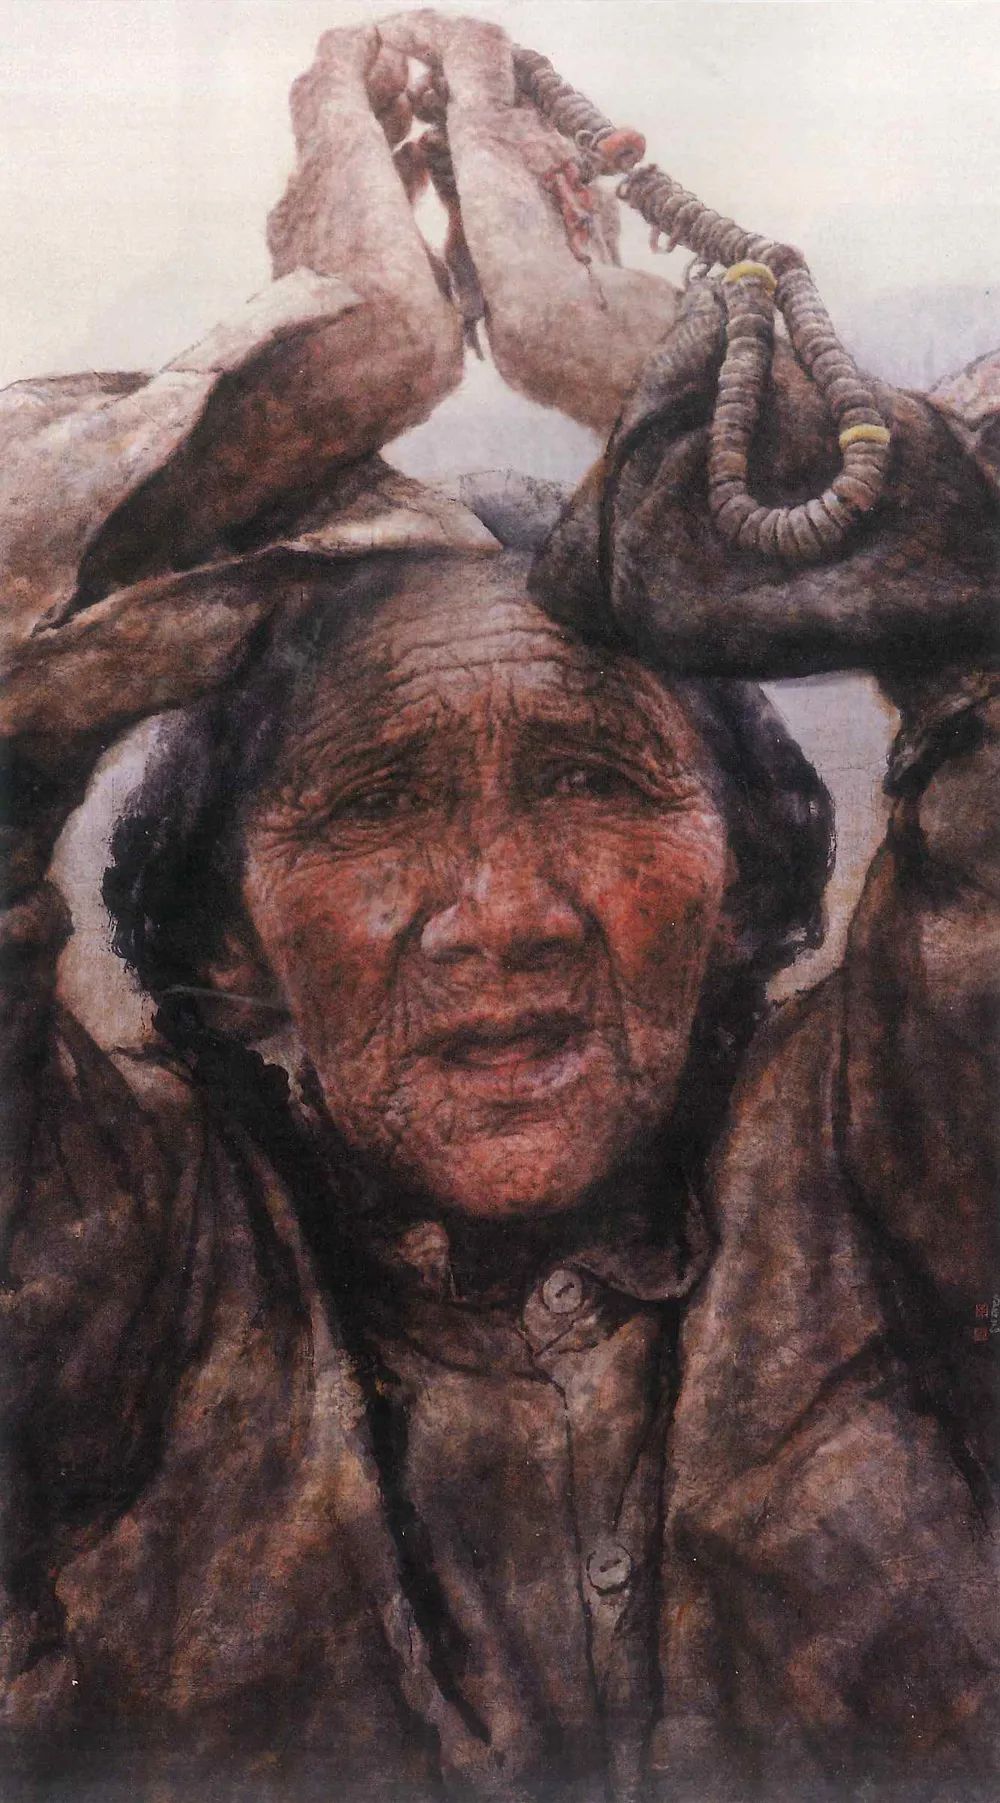 冬奥之约  新春之会——著名画家南海岩受邀参加“中国当代书画名家为冬奥助力”线上展